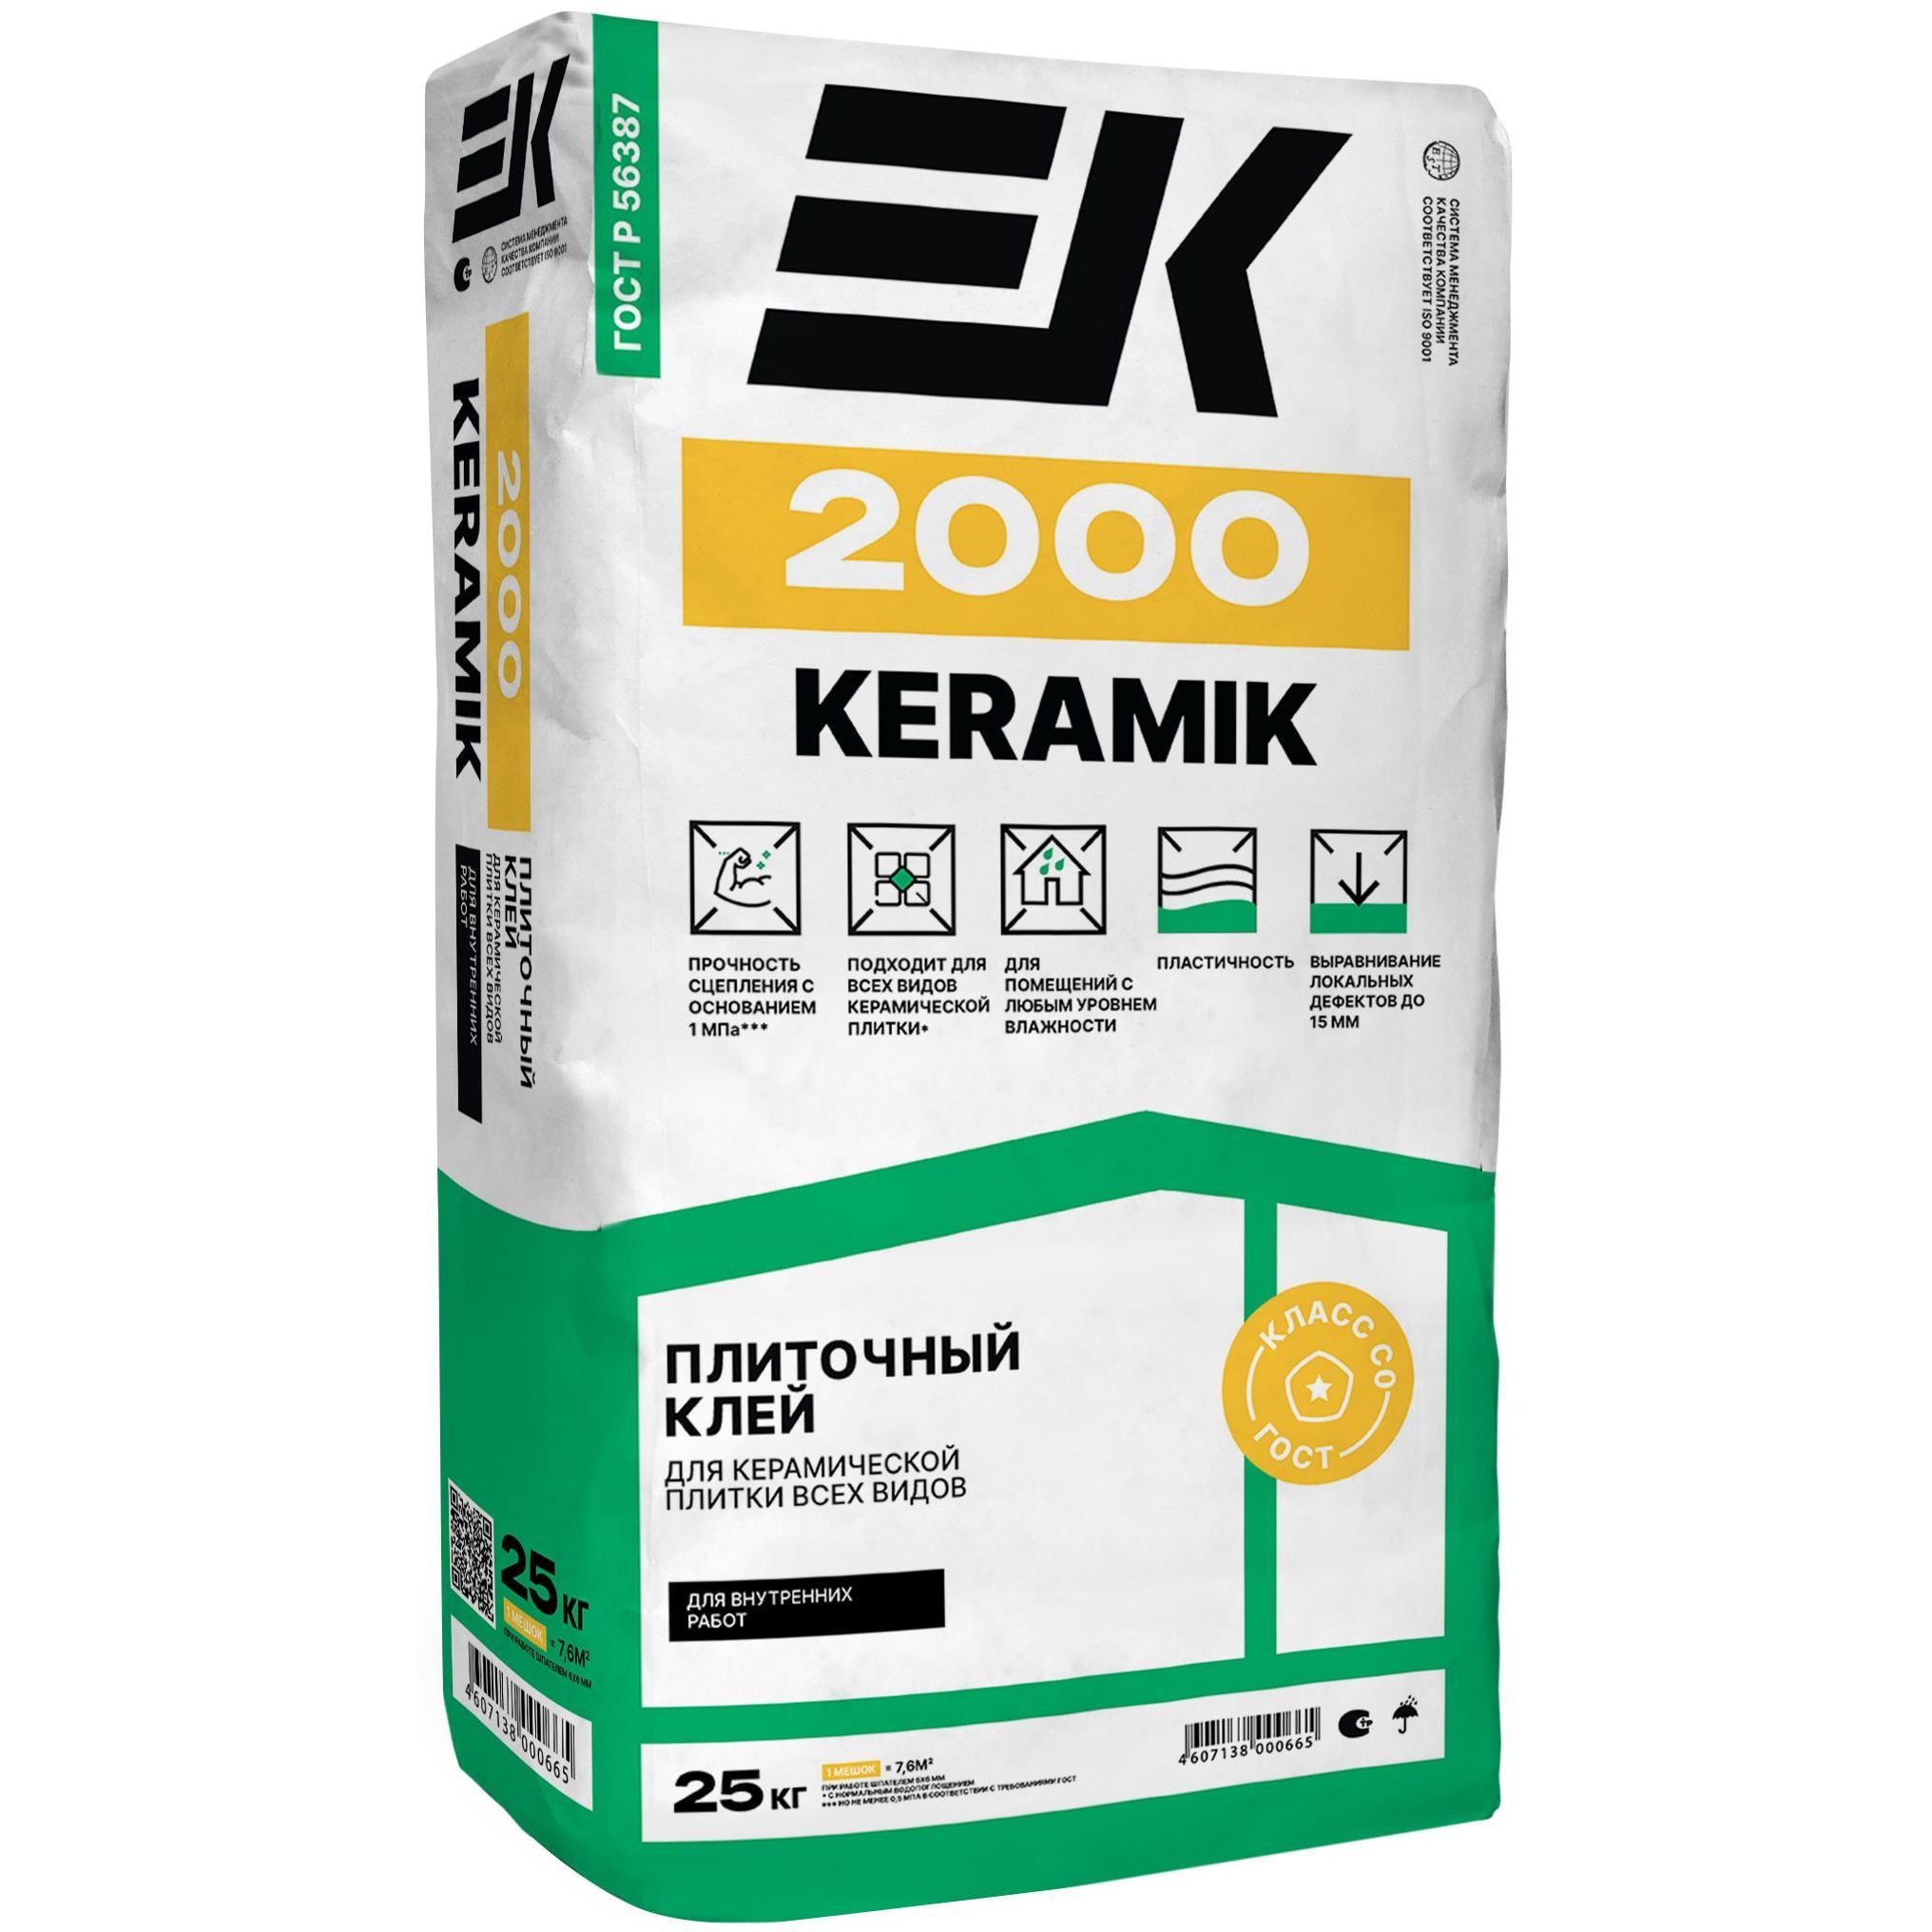 Клей для керамической плитки ЕК 2000 KERAMIK 25 кг